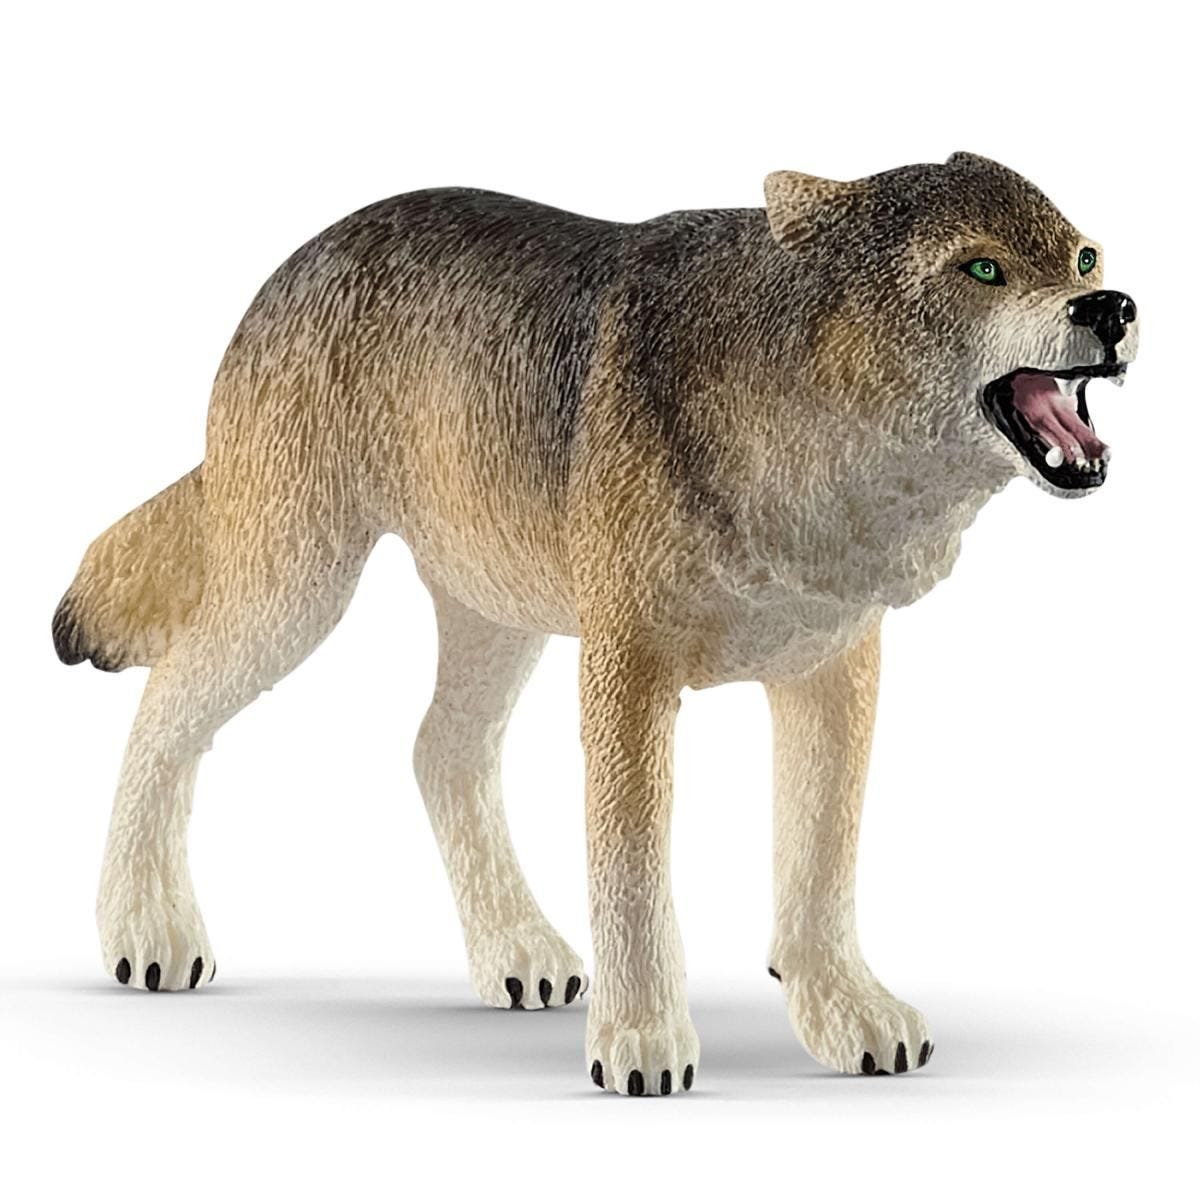 Wolf Figurine by Schleich # 14821